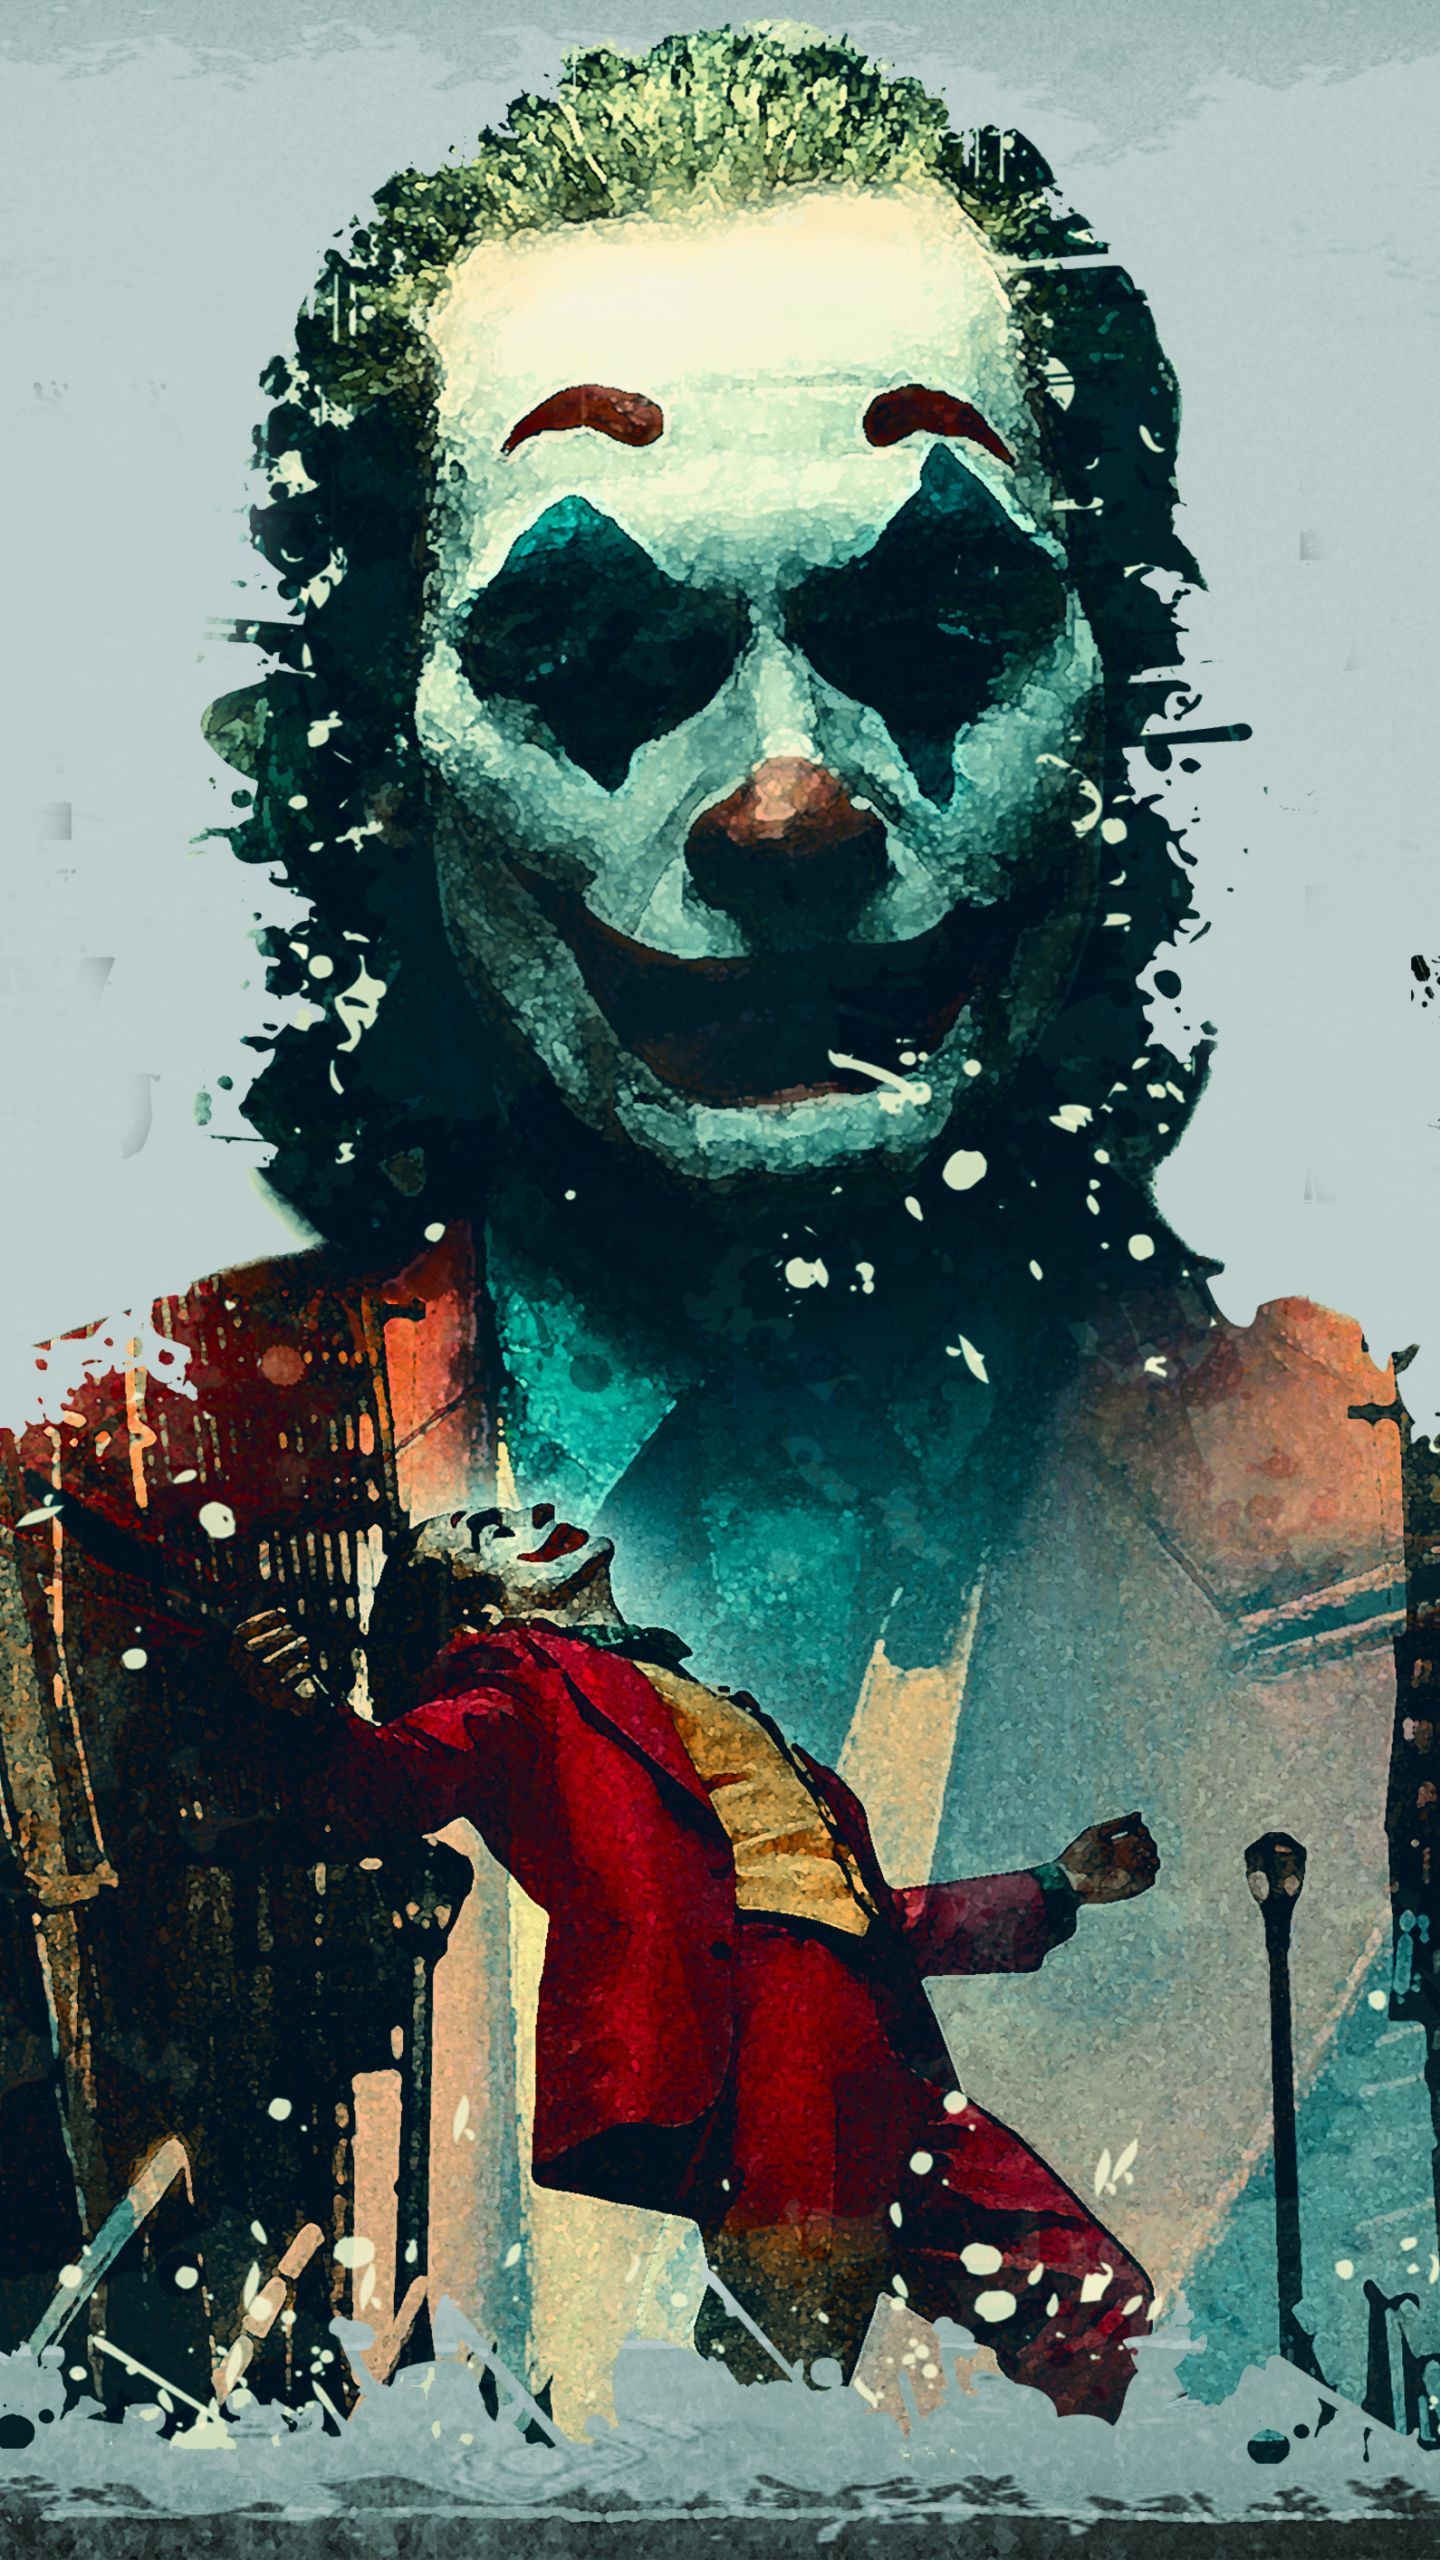 Joker Wallpaper 4k 2019